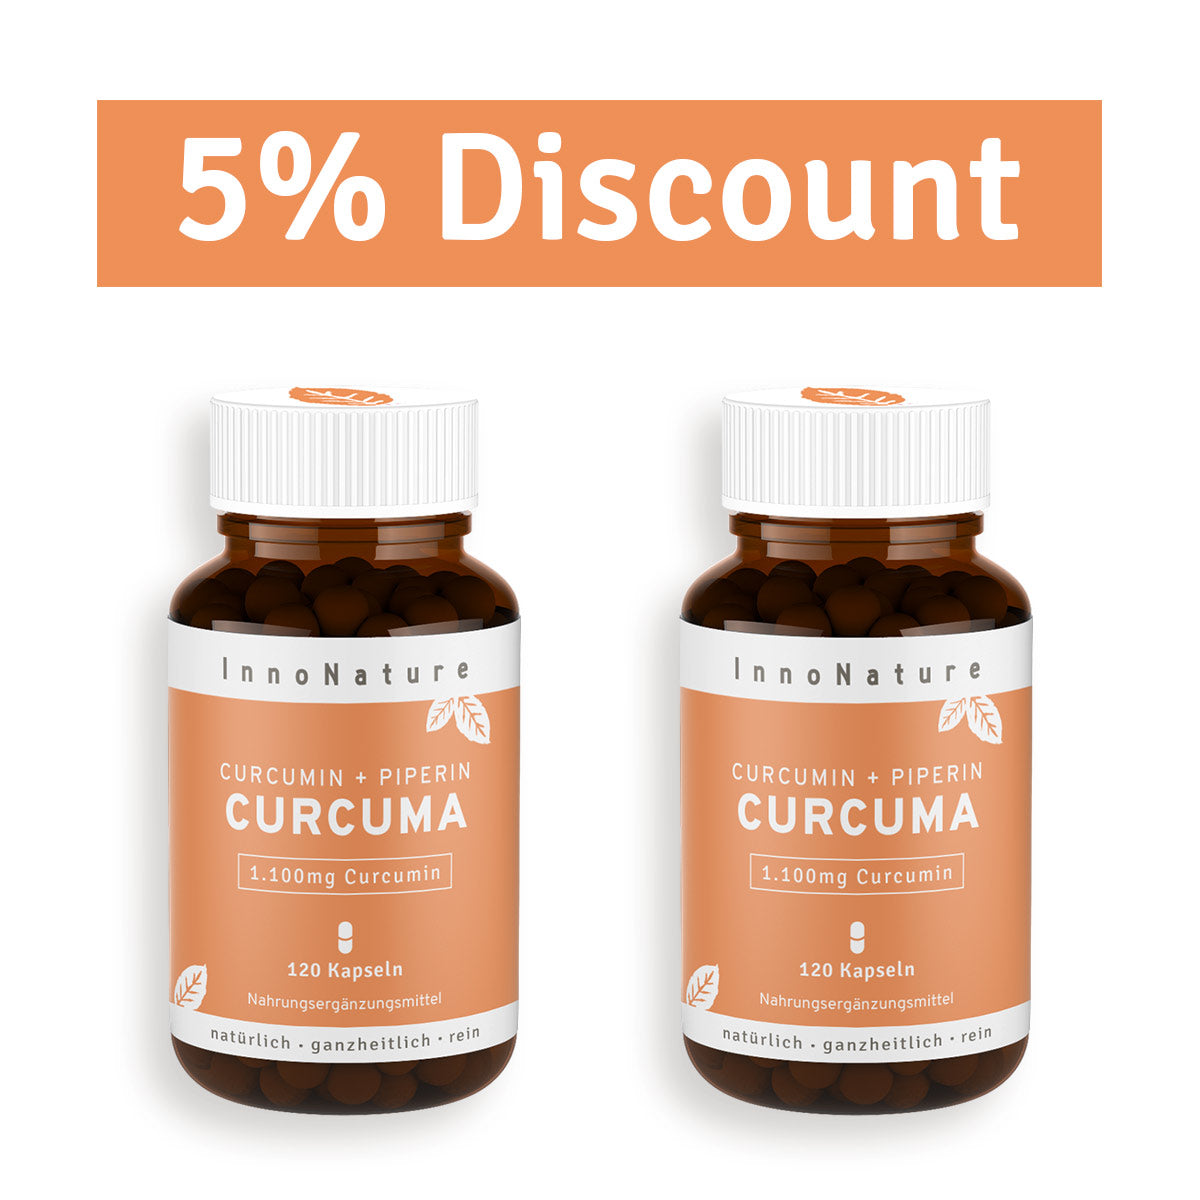 Curcumin + Piperine: Turmeric Capsules